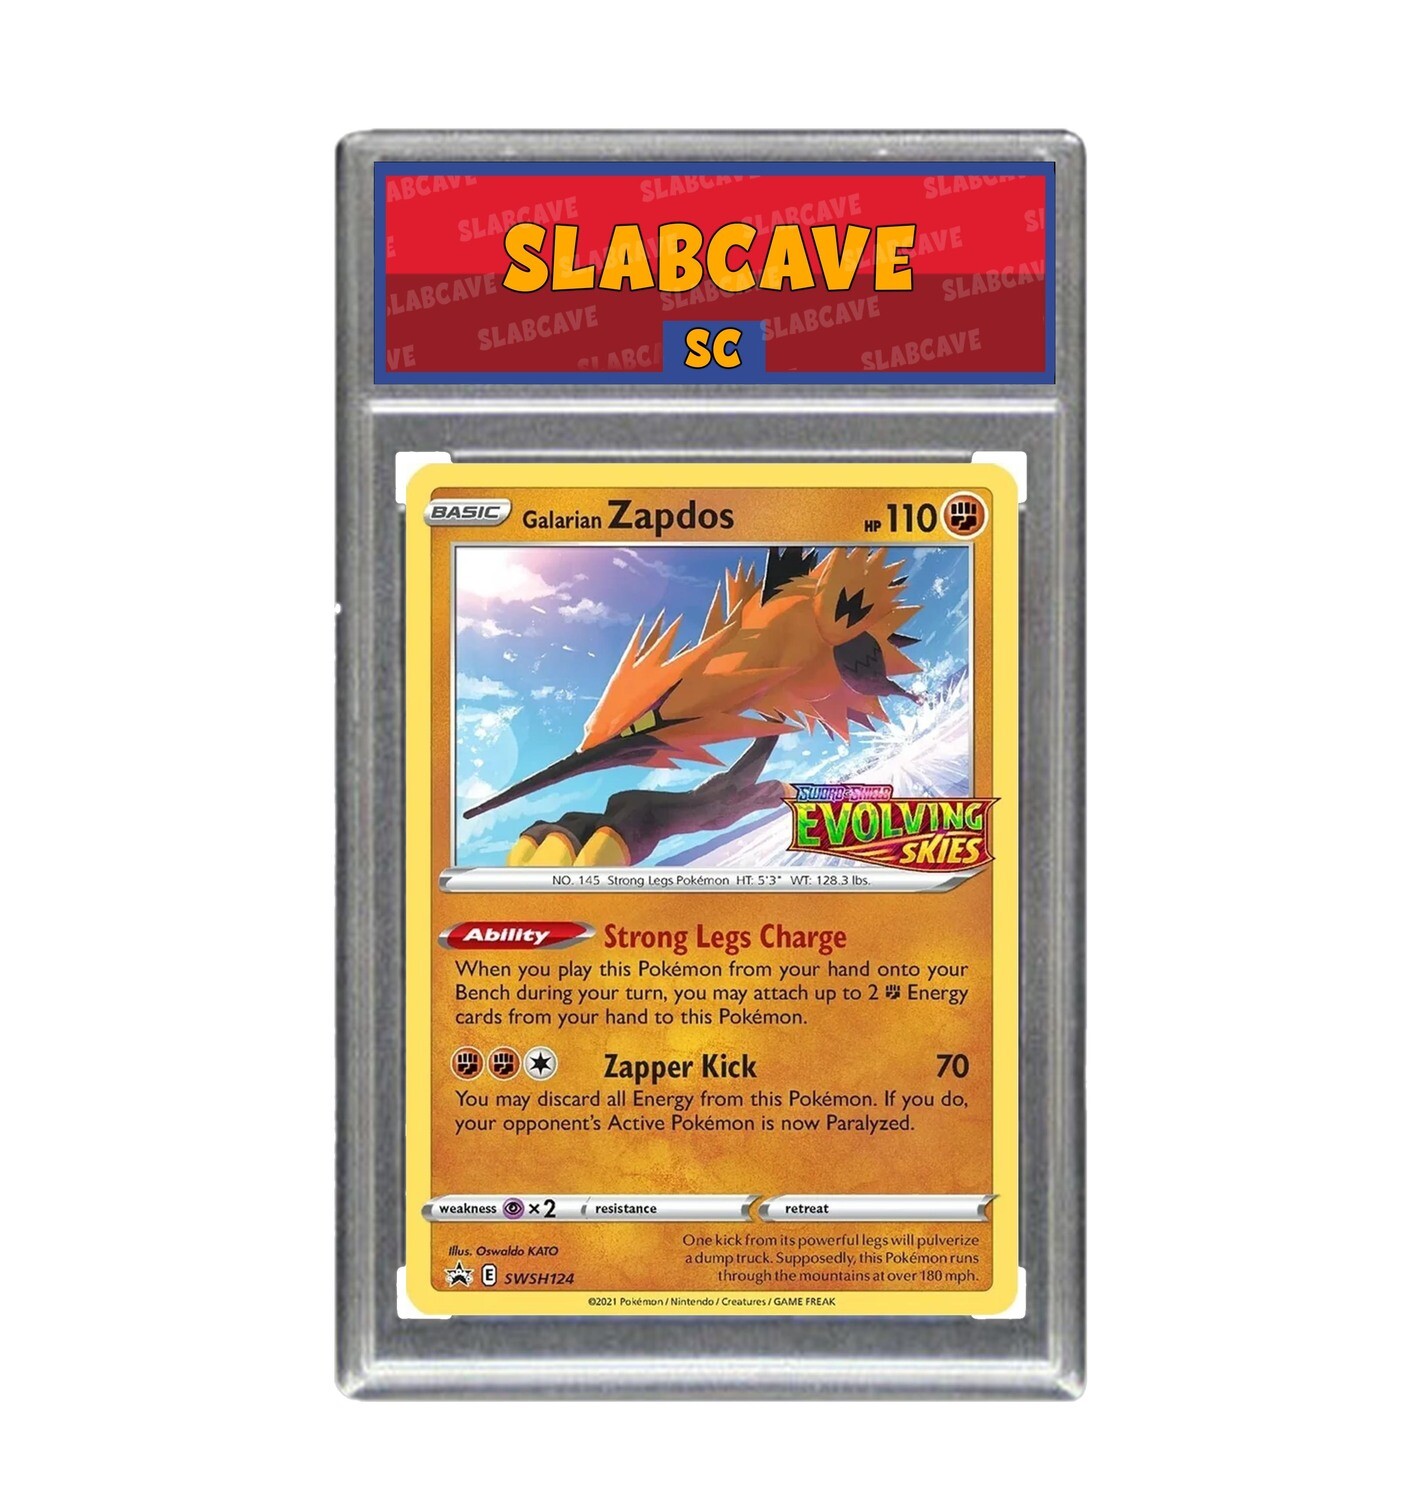 Graded Pokemon Card: SC9 - Galarian Zapdos SWSH124 [Evolving Skies Prerelease Promo]